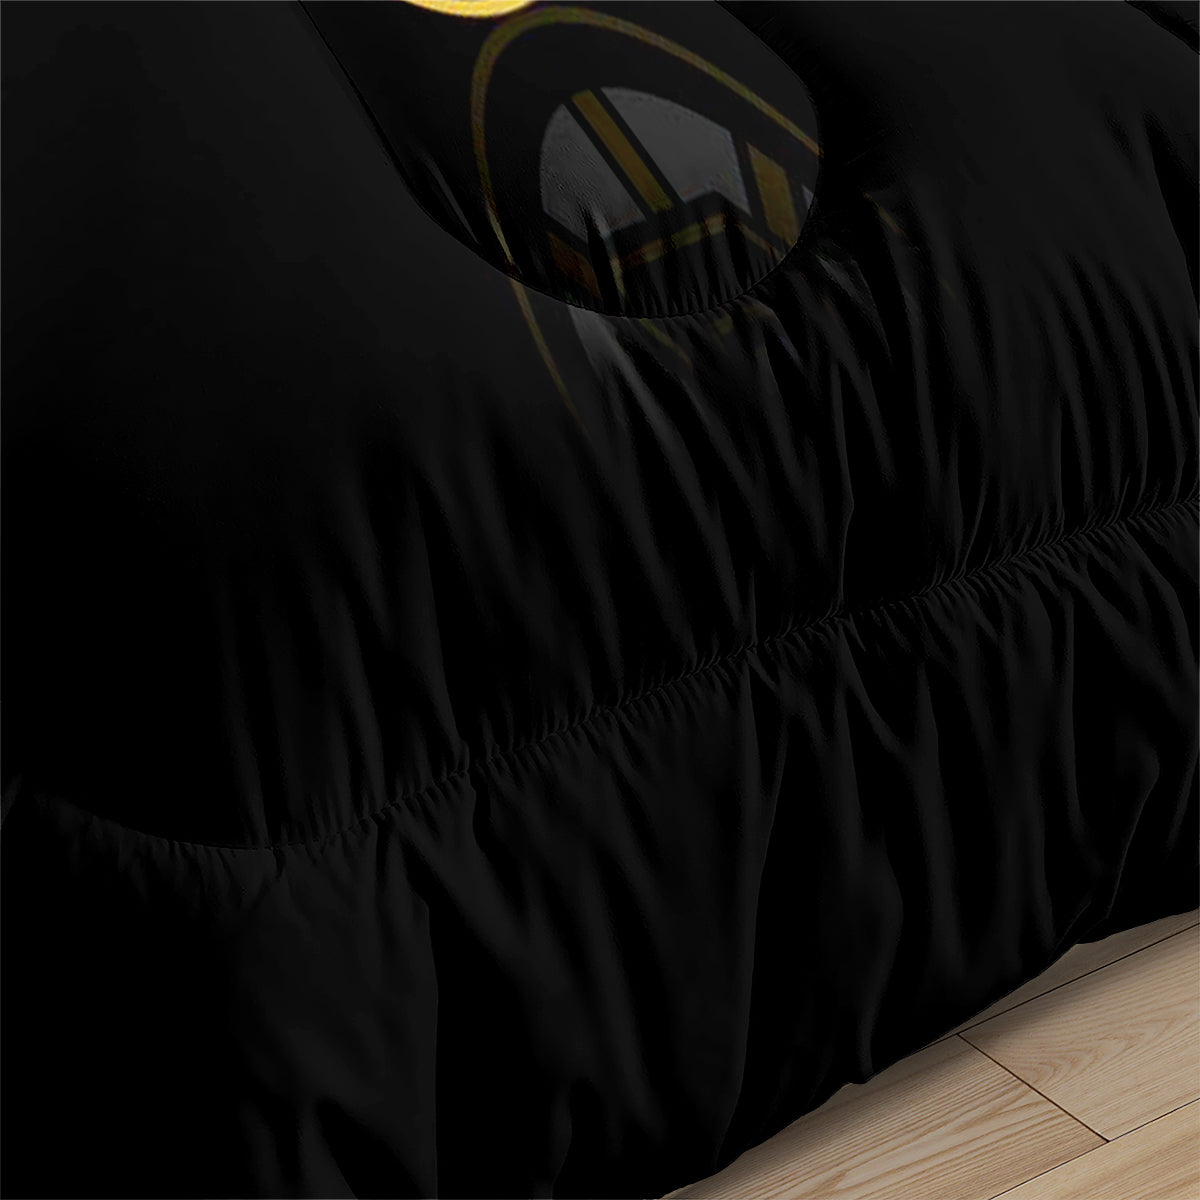 Boston Bruins Hockey Comforter Pillowcases 3PC Sets Blanket All Season Reversible Quilted Duvet